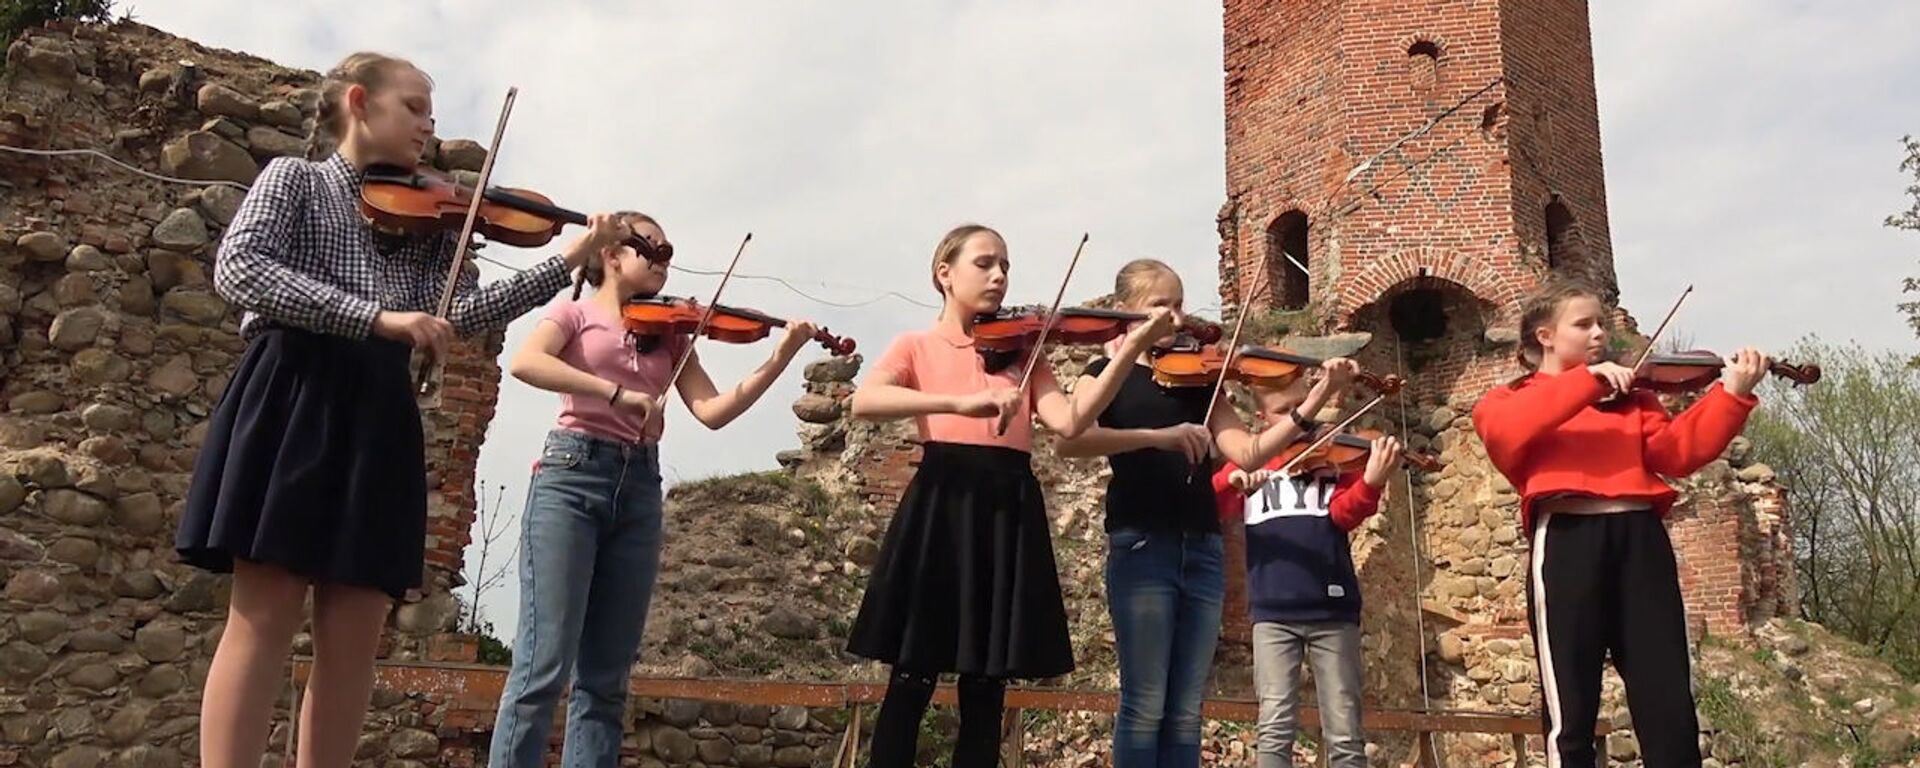 Российские дети дали концерт на руинах старинного замка - видео - Sputnik Латвия, 1920, 16.05.2019